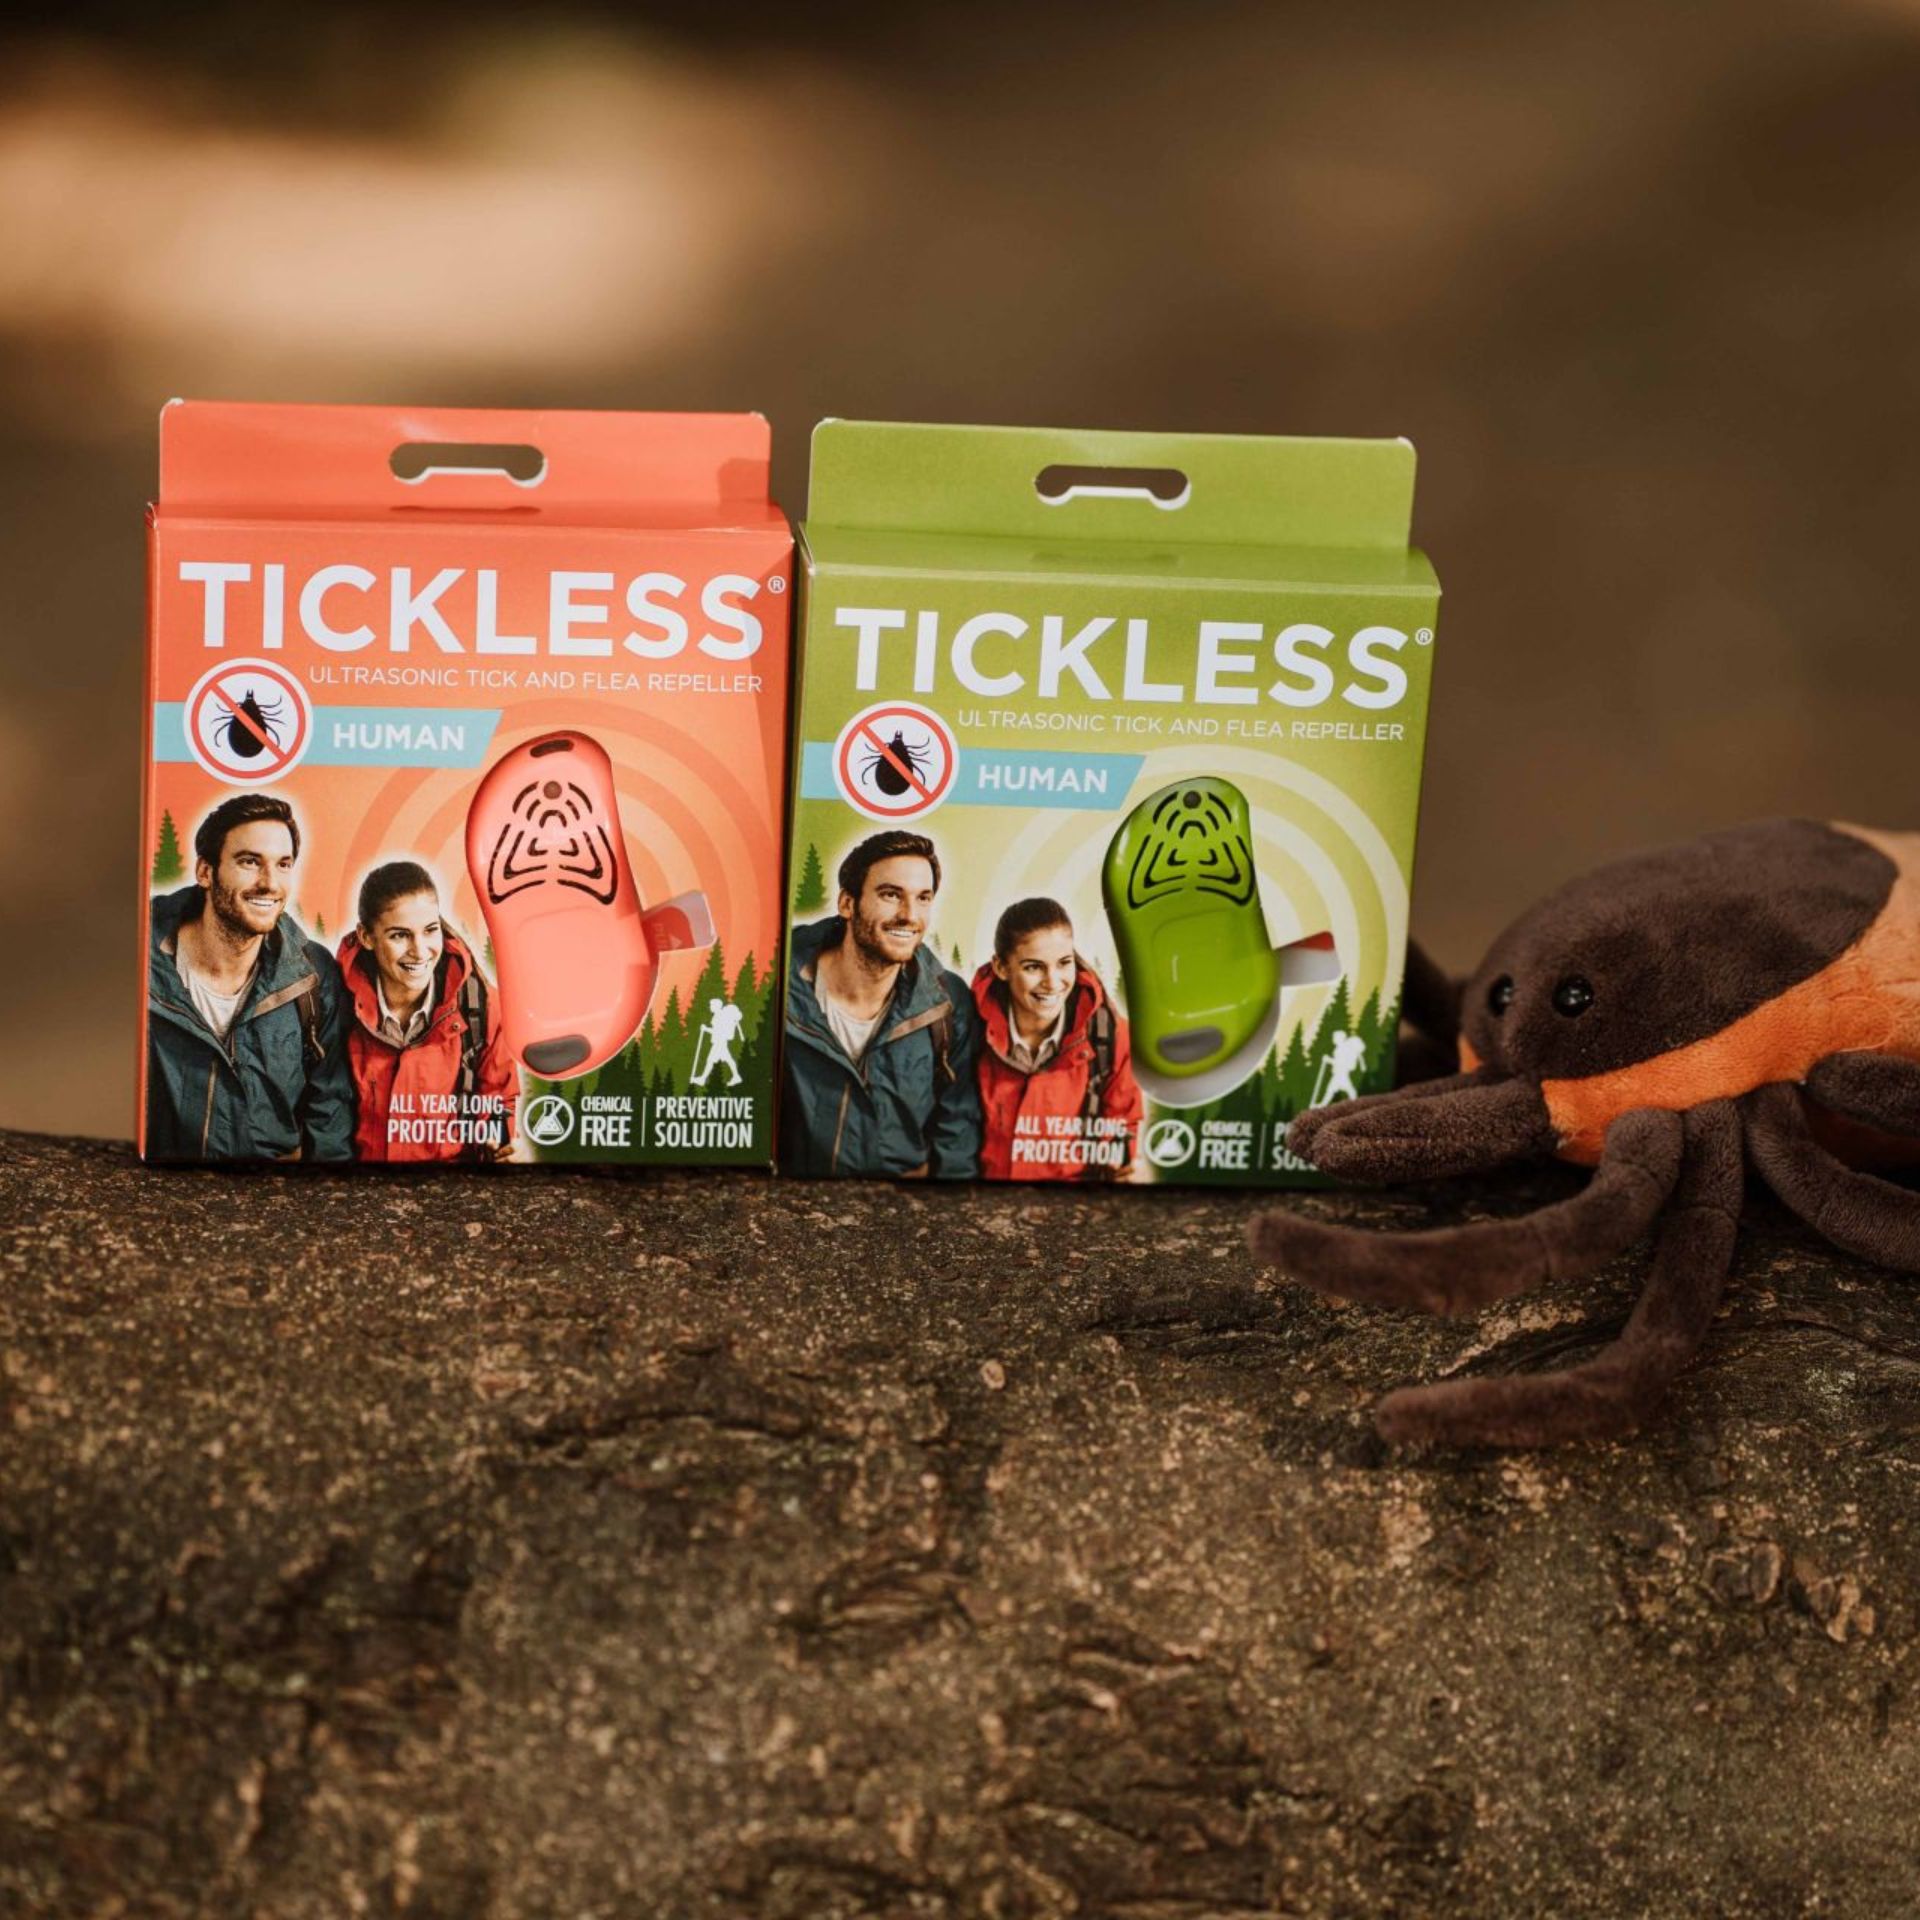 Tickless Human Tick repellent verde